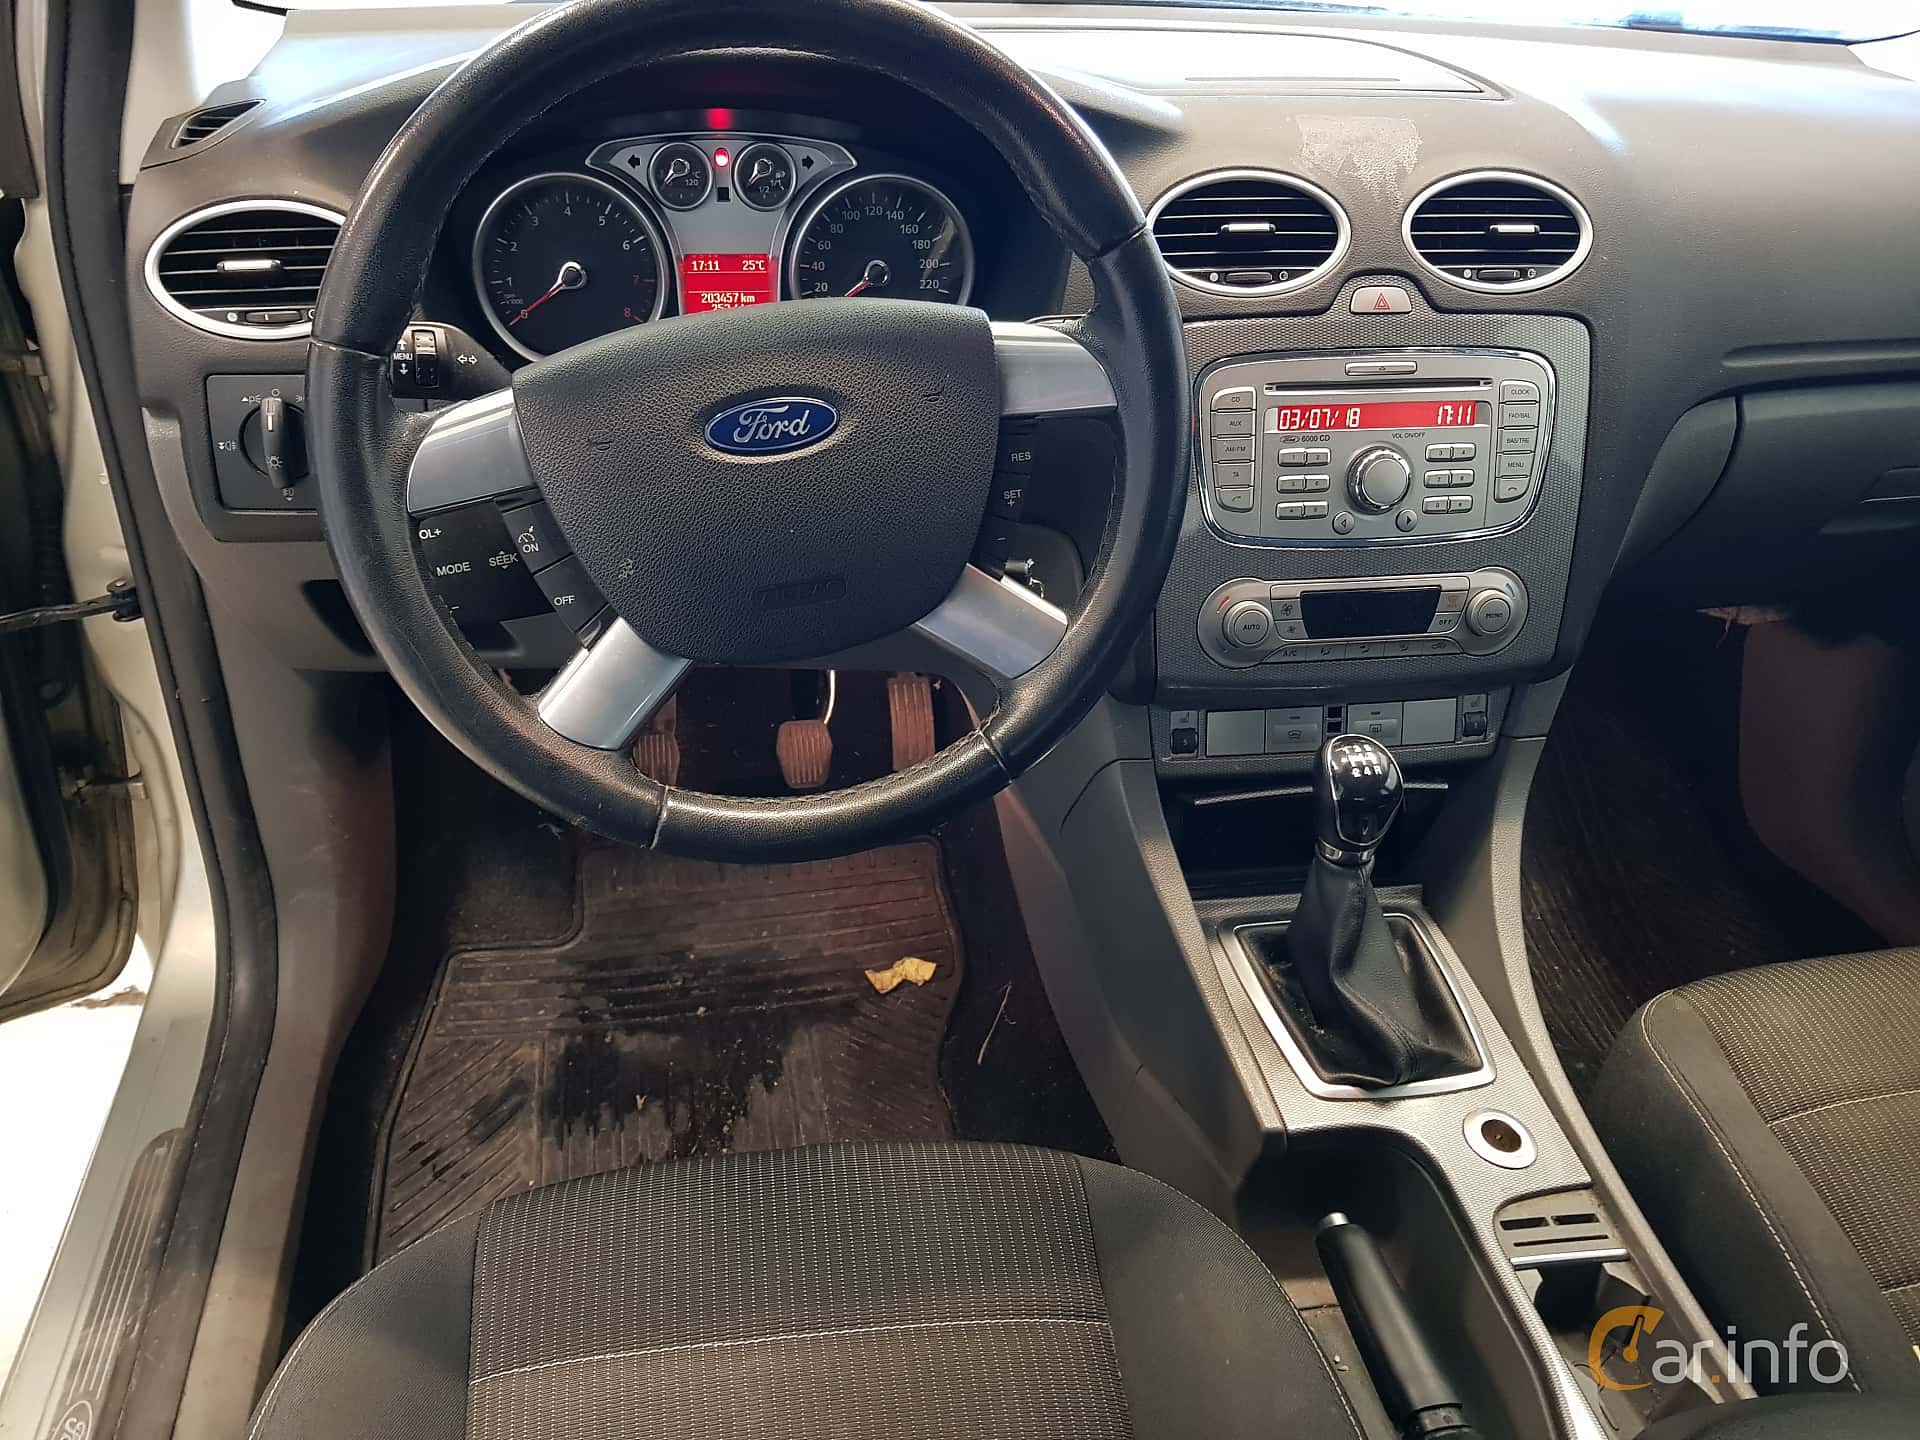 Interior Of Ford Focus 5 Door Hatchback 1 8 Duratec Flexifuel